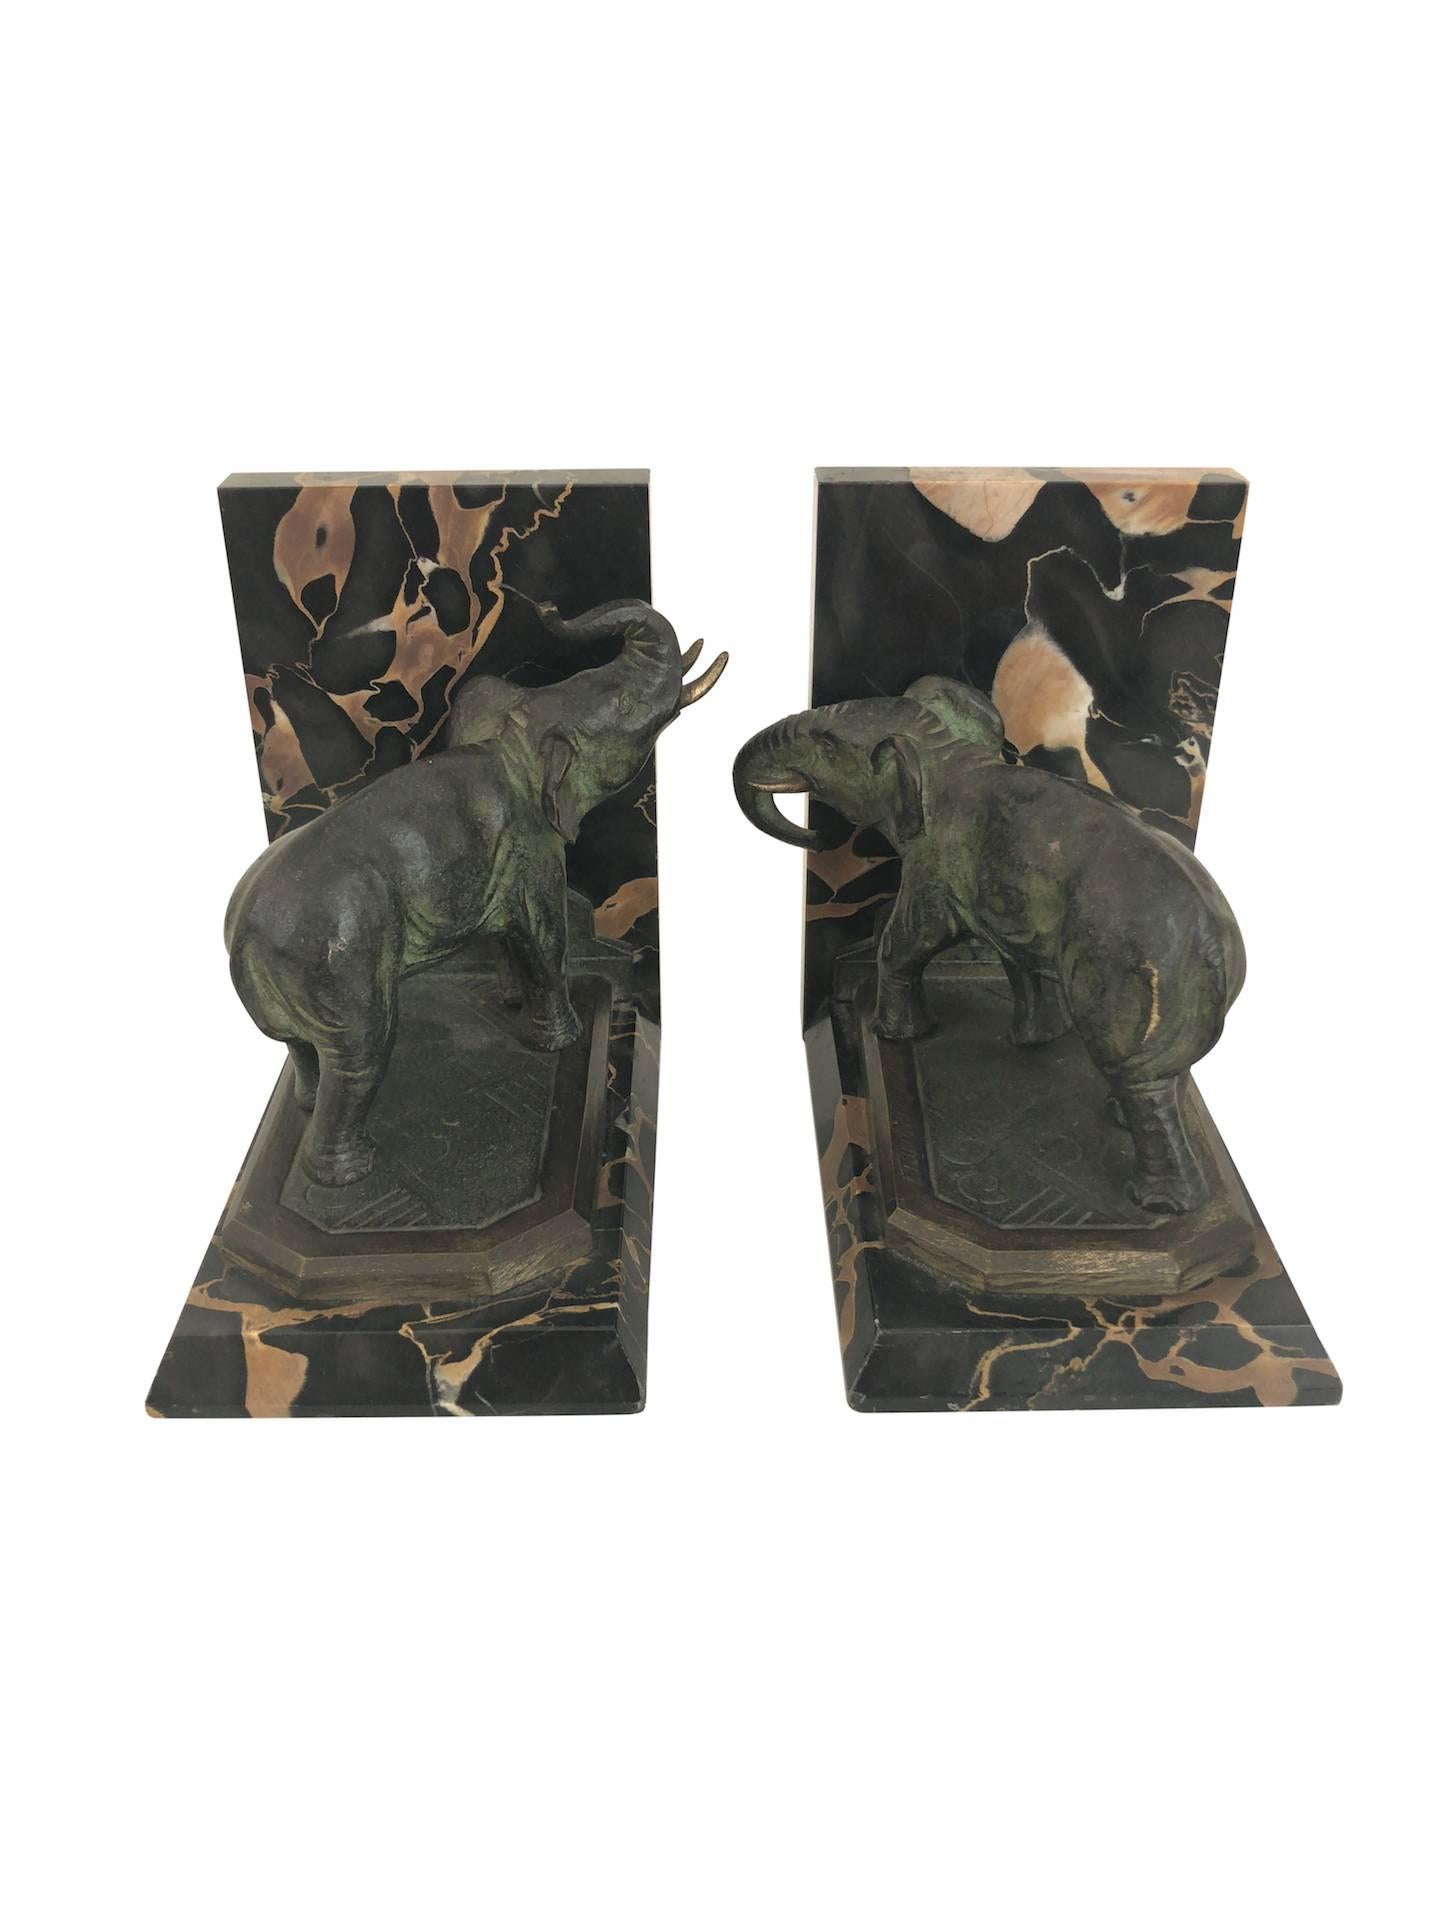 Jugendstil-Marmor-Buchstützen mit Bronze-Elefanten von MARIONNET, Frankreich, 1900er Jahre (Art nouveau)